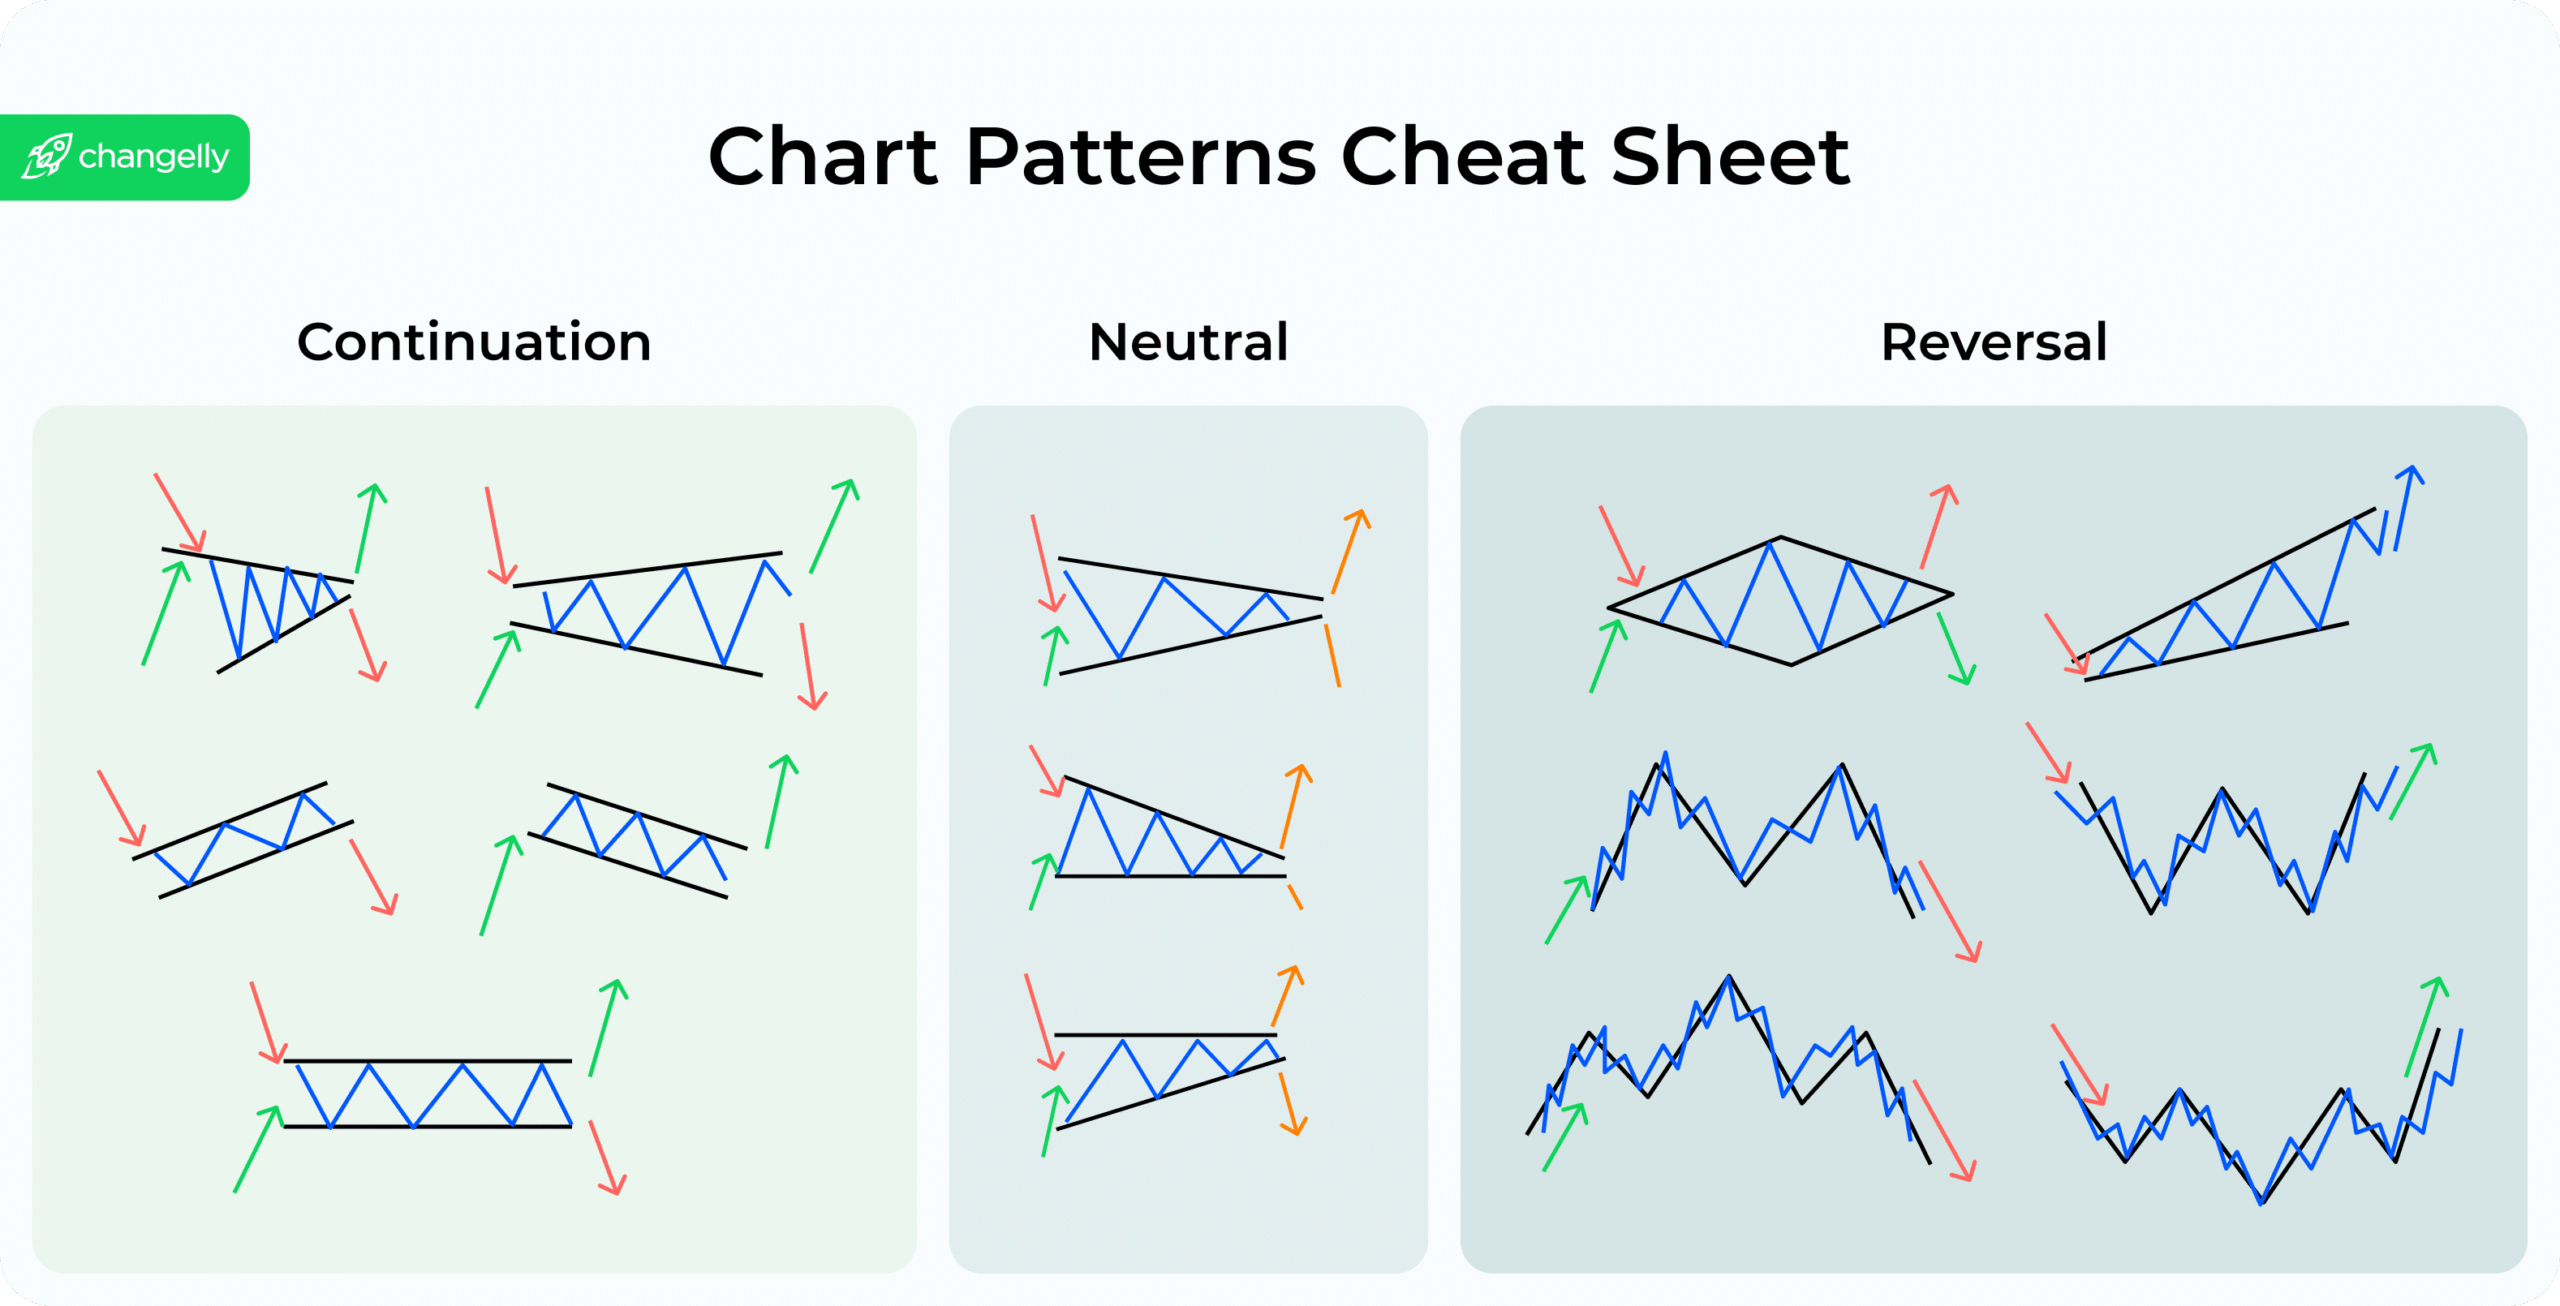 A chart pattern cheat sheet